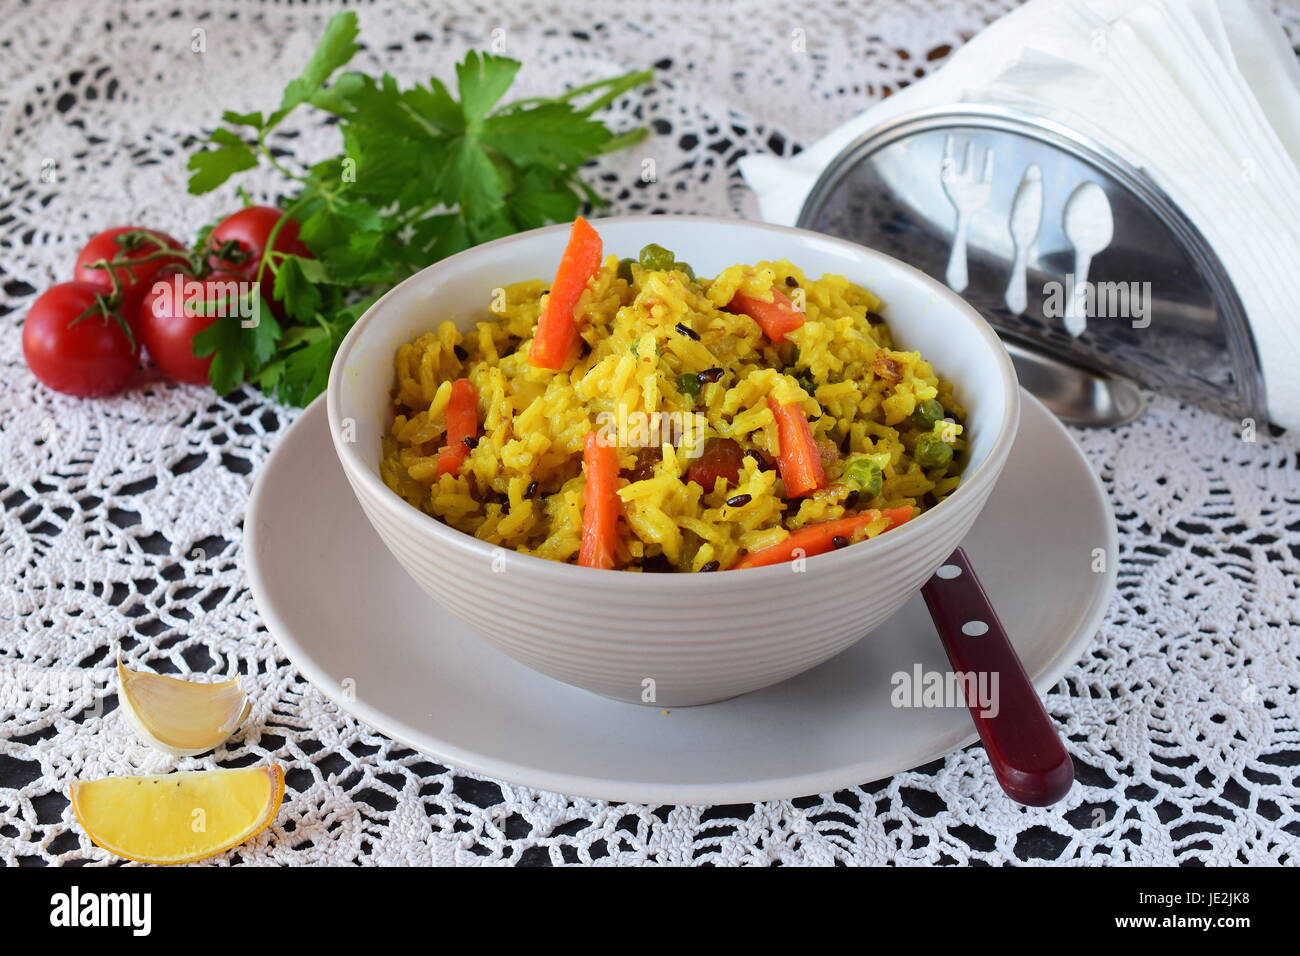 Facile à cuire avec le riz, les carottes, les oignons et les raisins secs dans un bol d'huile d'olive sur un fond blanc. Concept de saine alimentation Banque D'Images